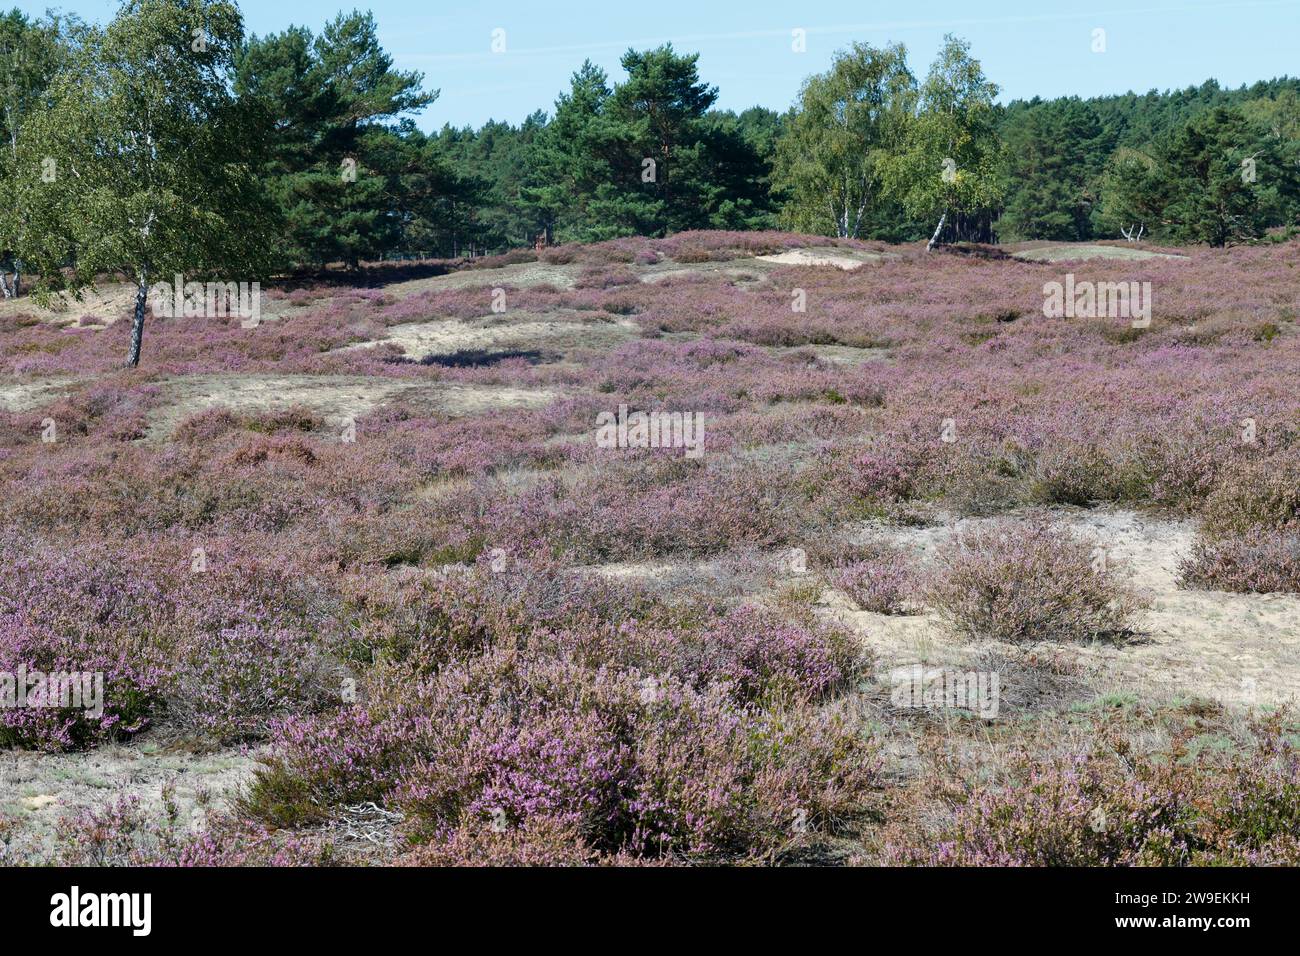 Nemitzer Heide, Heidegebiet im Naturpark Elbhöhen-Wendland, Niedersachsen, Deutschland, Heidelandschaft. Besenheide, Heidekraut, Calluna vulgaris, Com Foto Stock